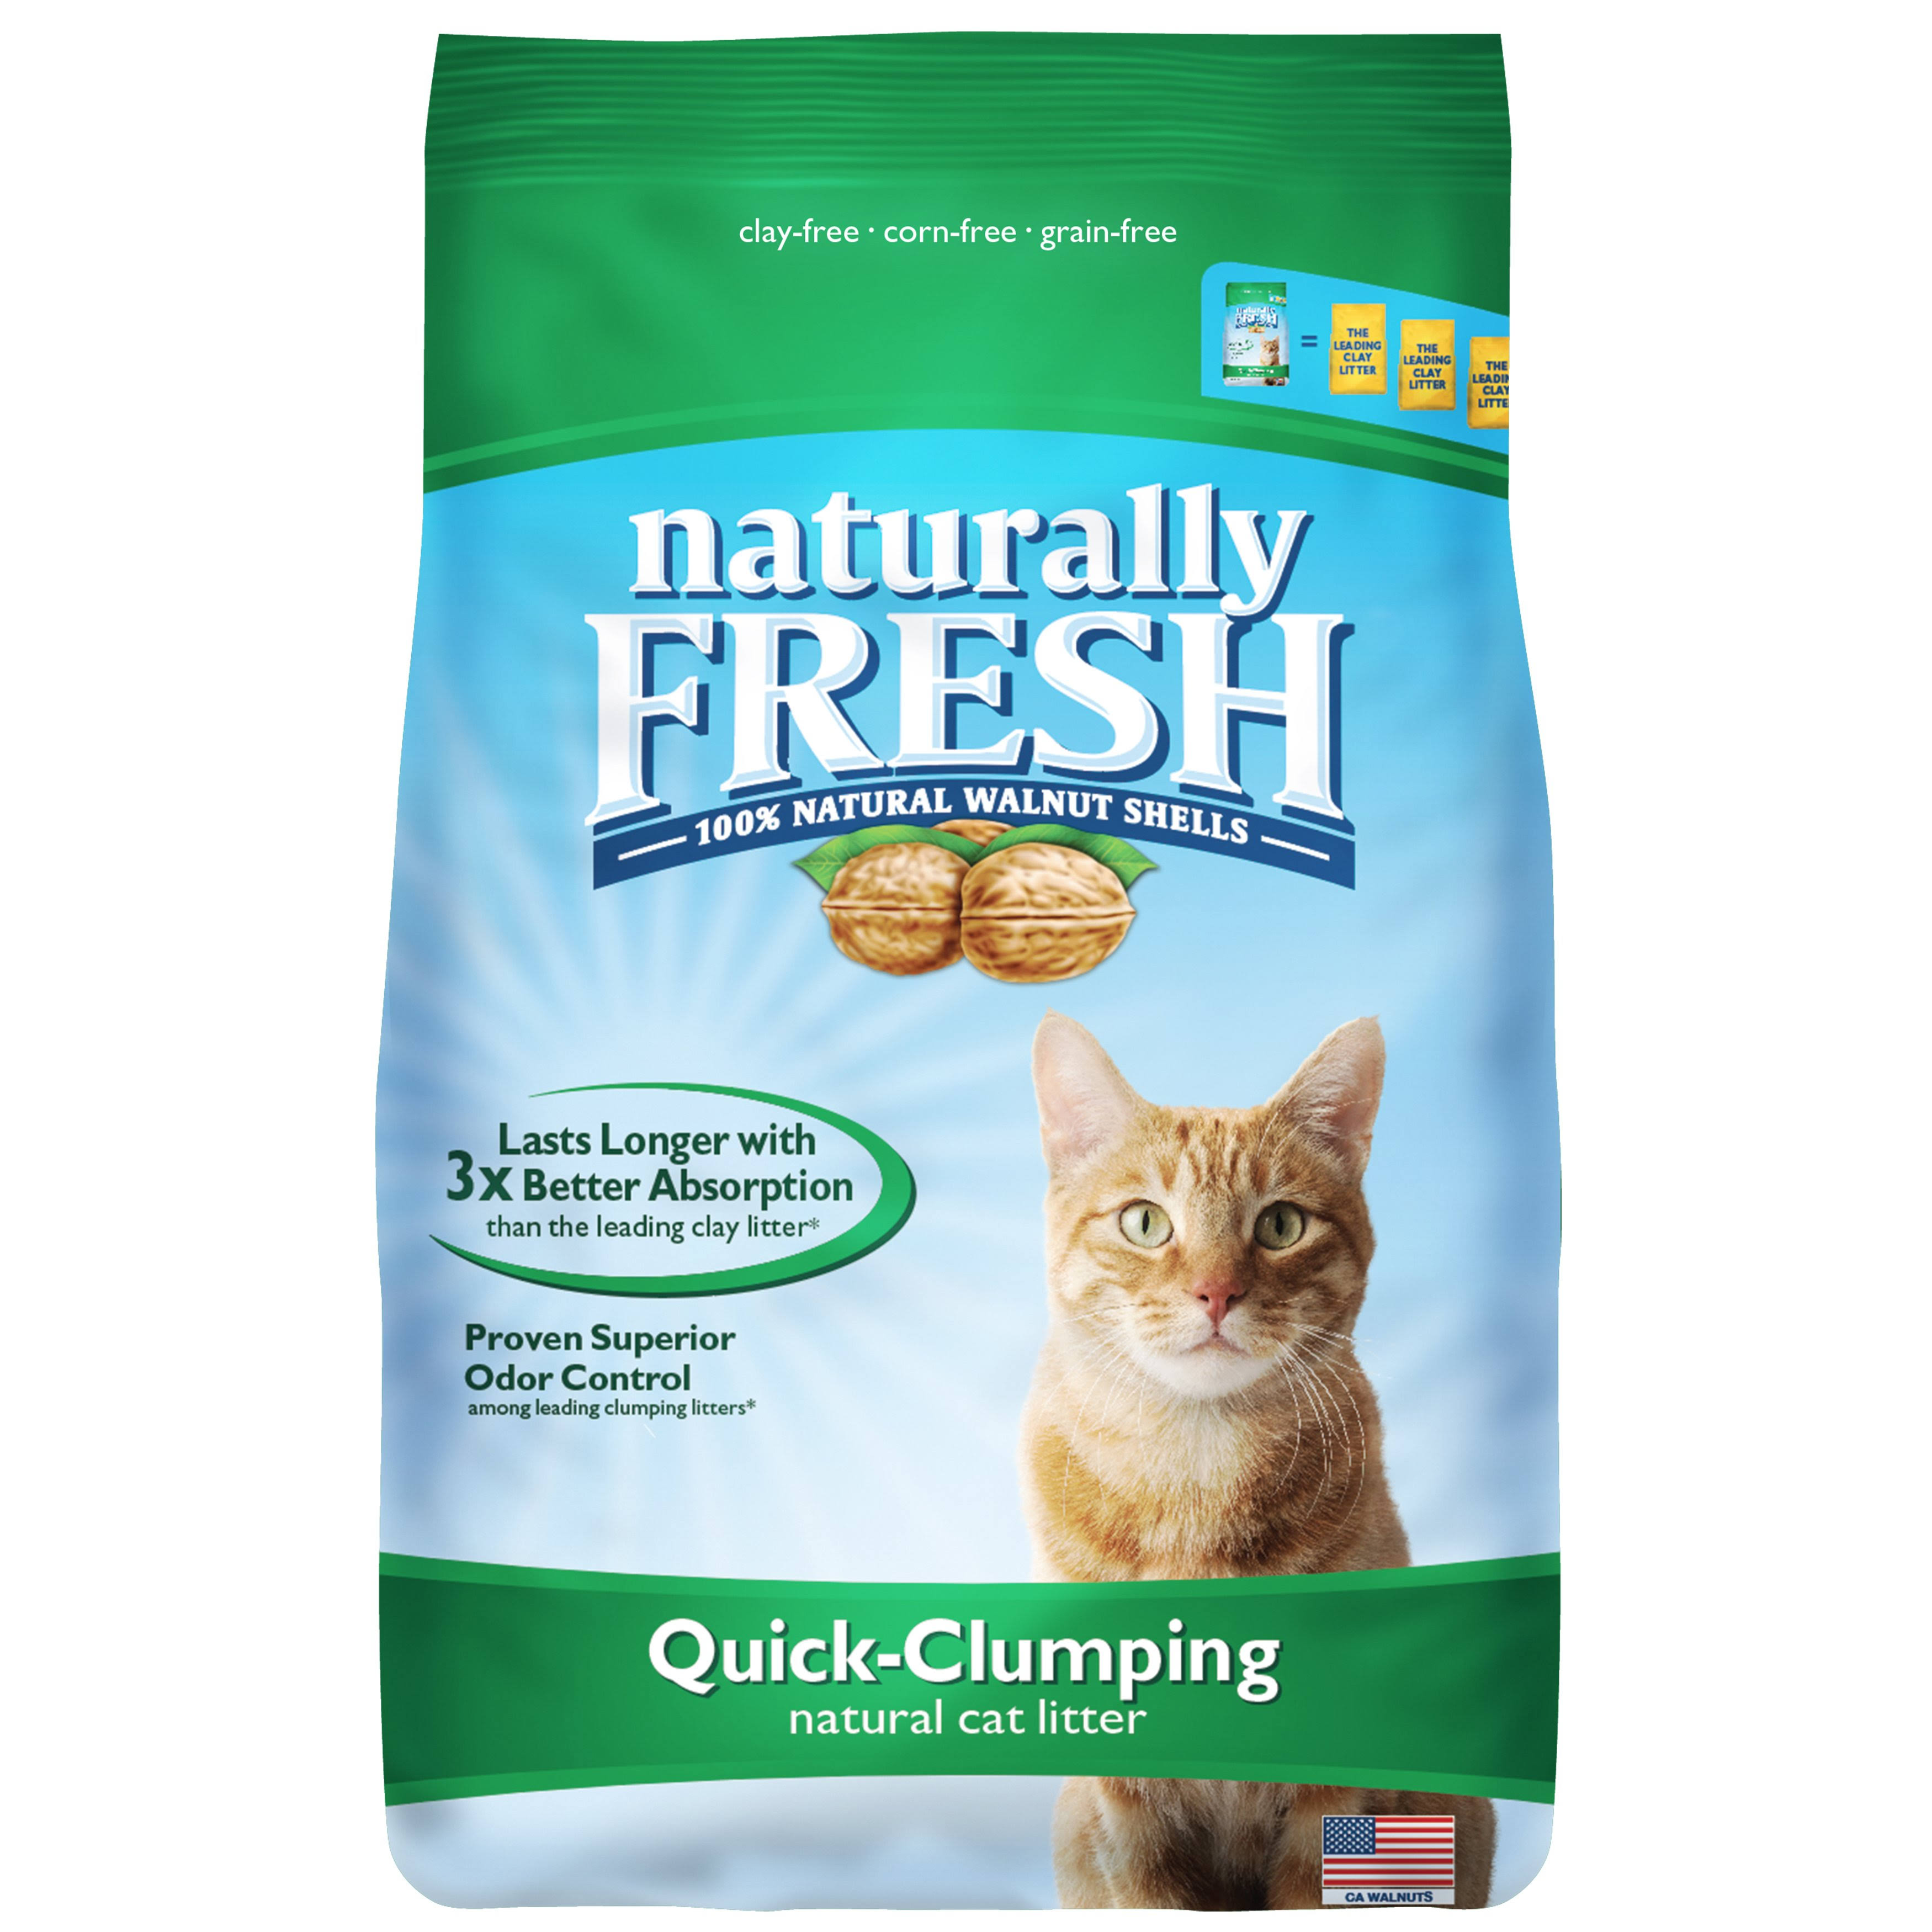 Quick-clumping Cat Litter - Naturally Fresh